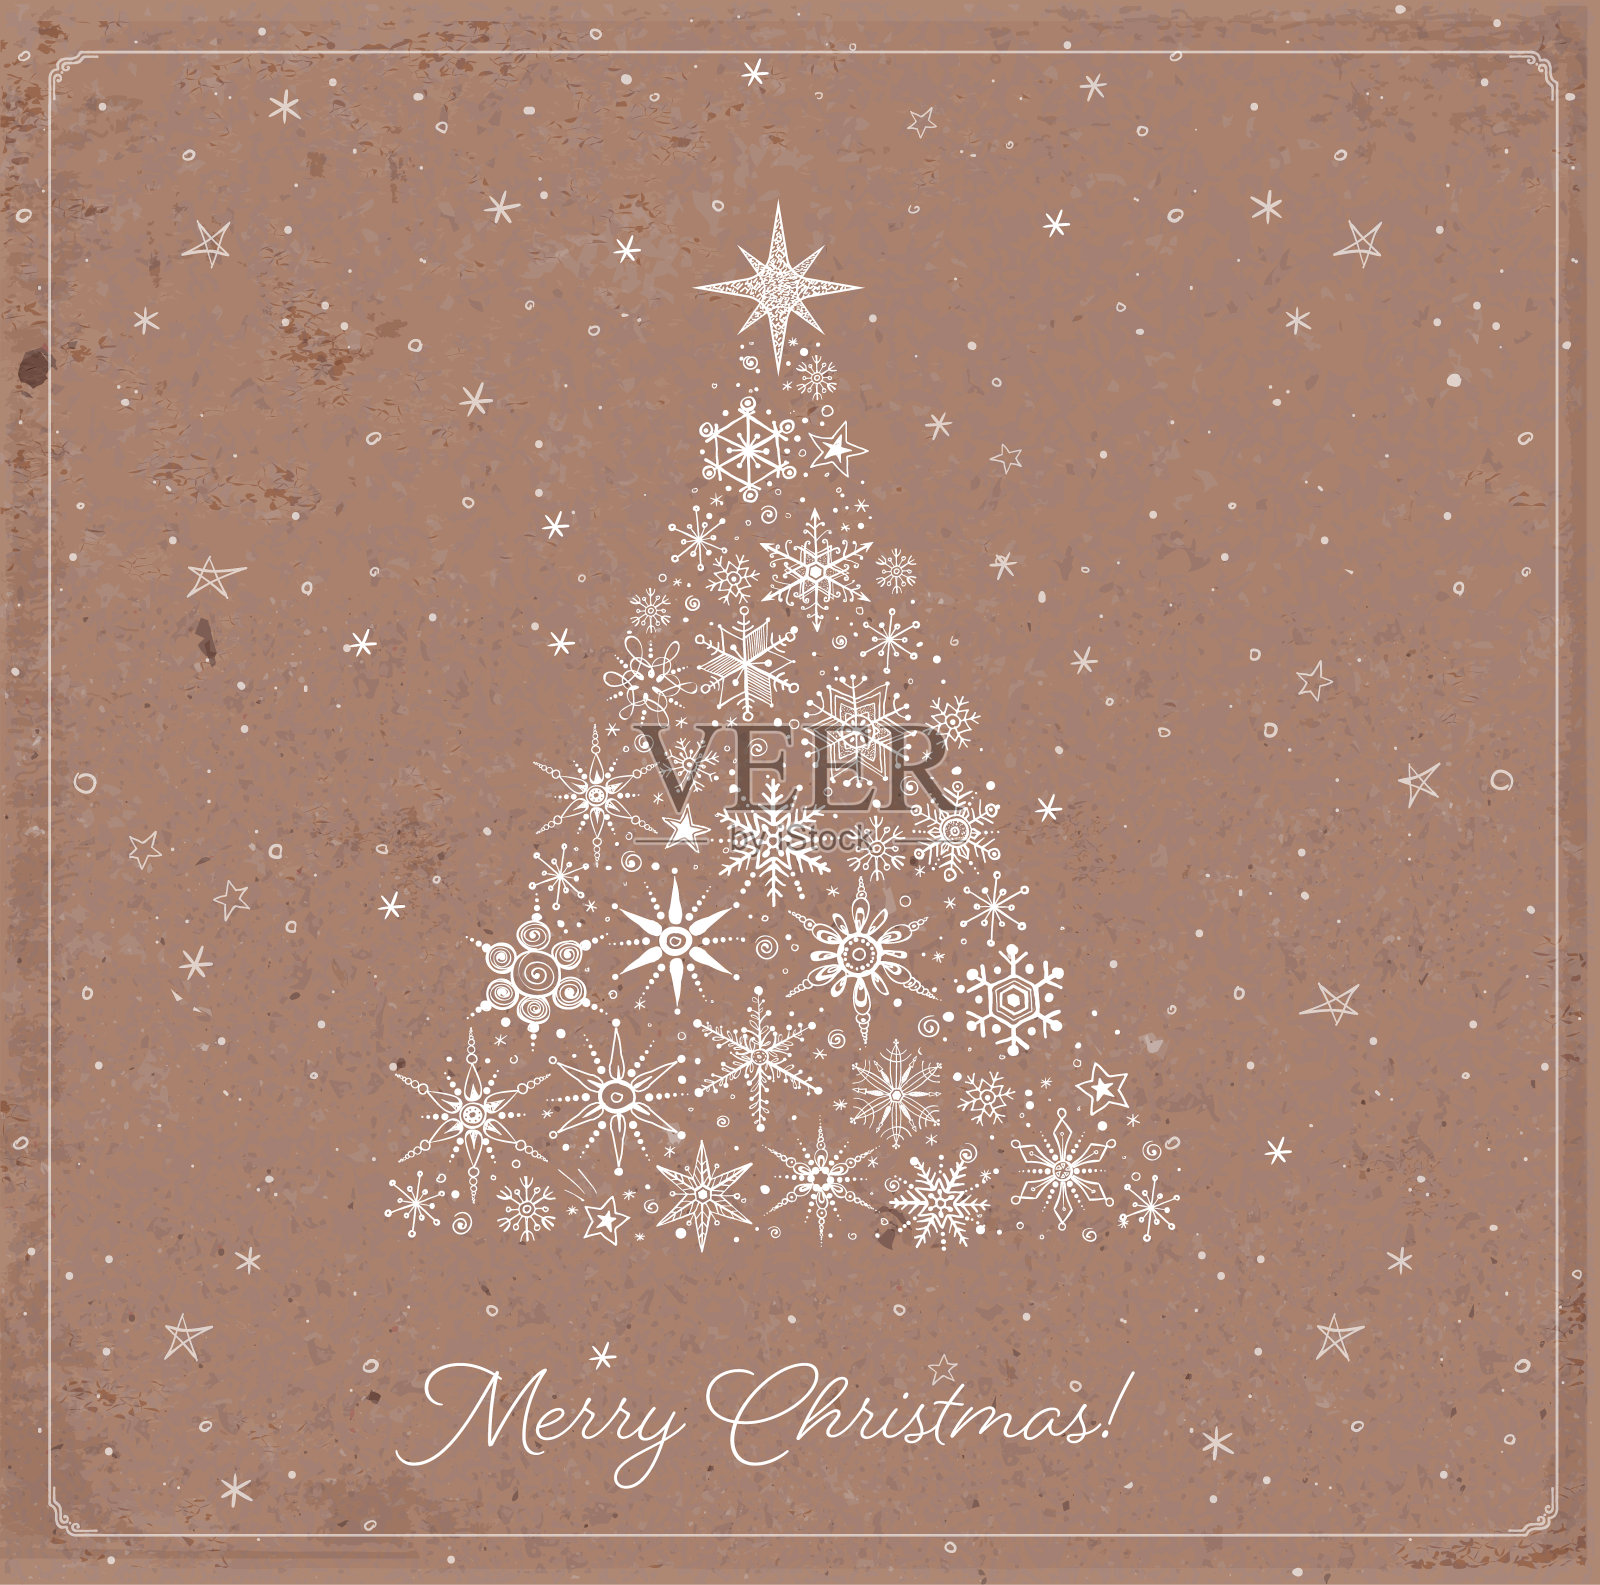 在棕色包裹纸背景上简单的极简主义涂鸦风格的圣诞贺卡插画图片素材